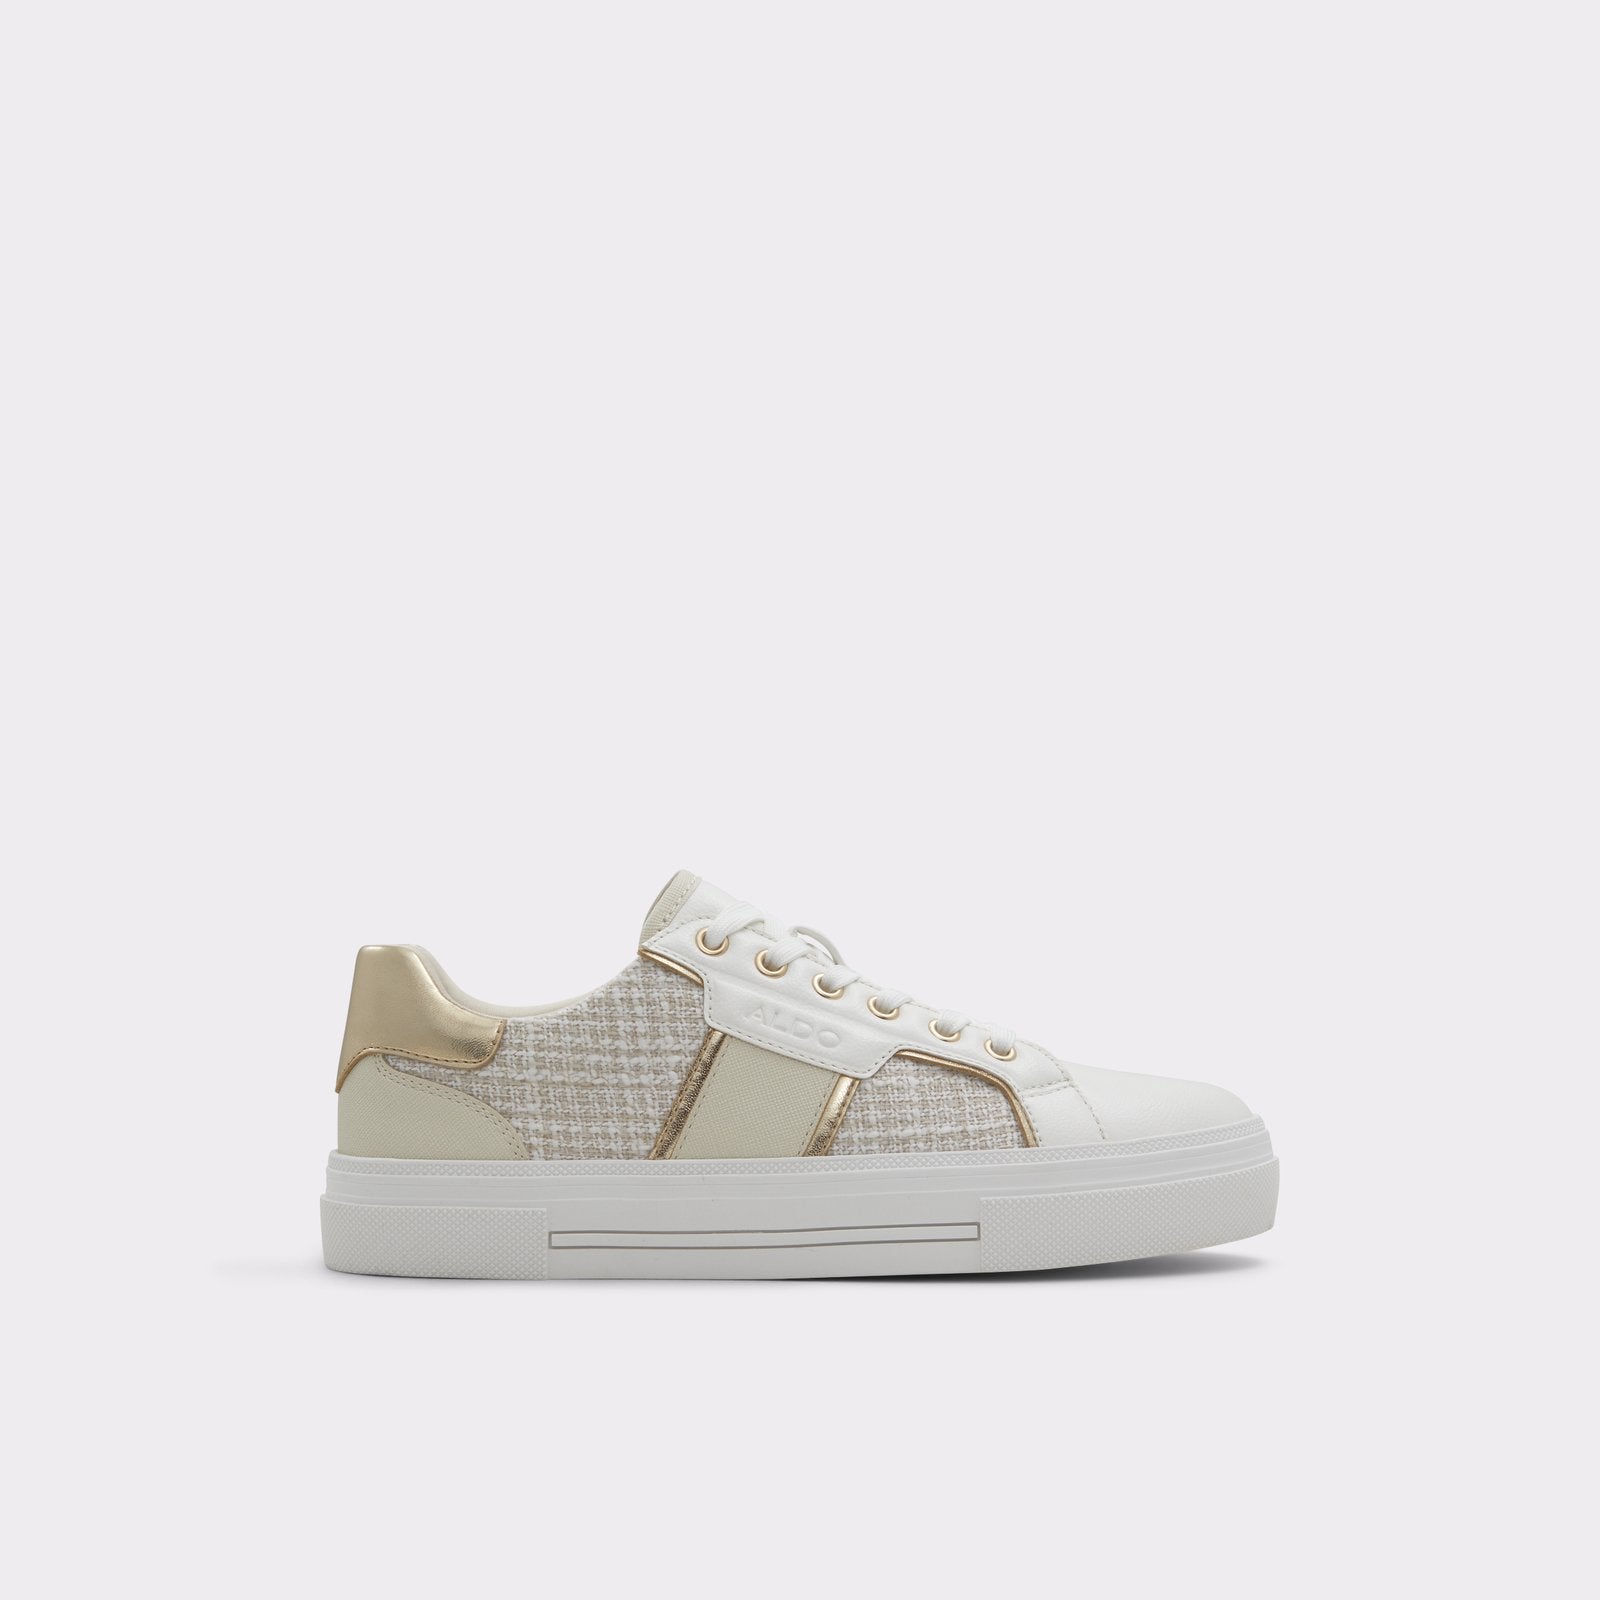 Onirasean / Sneakers Women Shoes - White - ALDO KSA